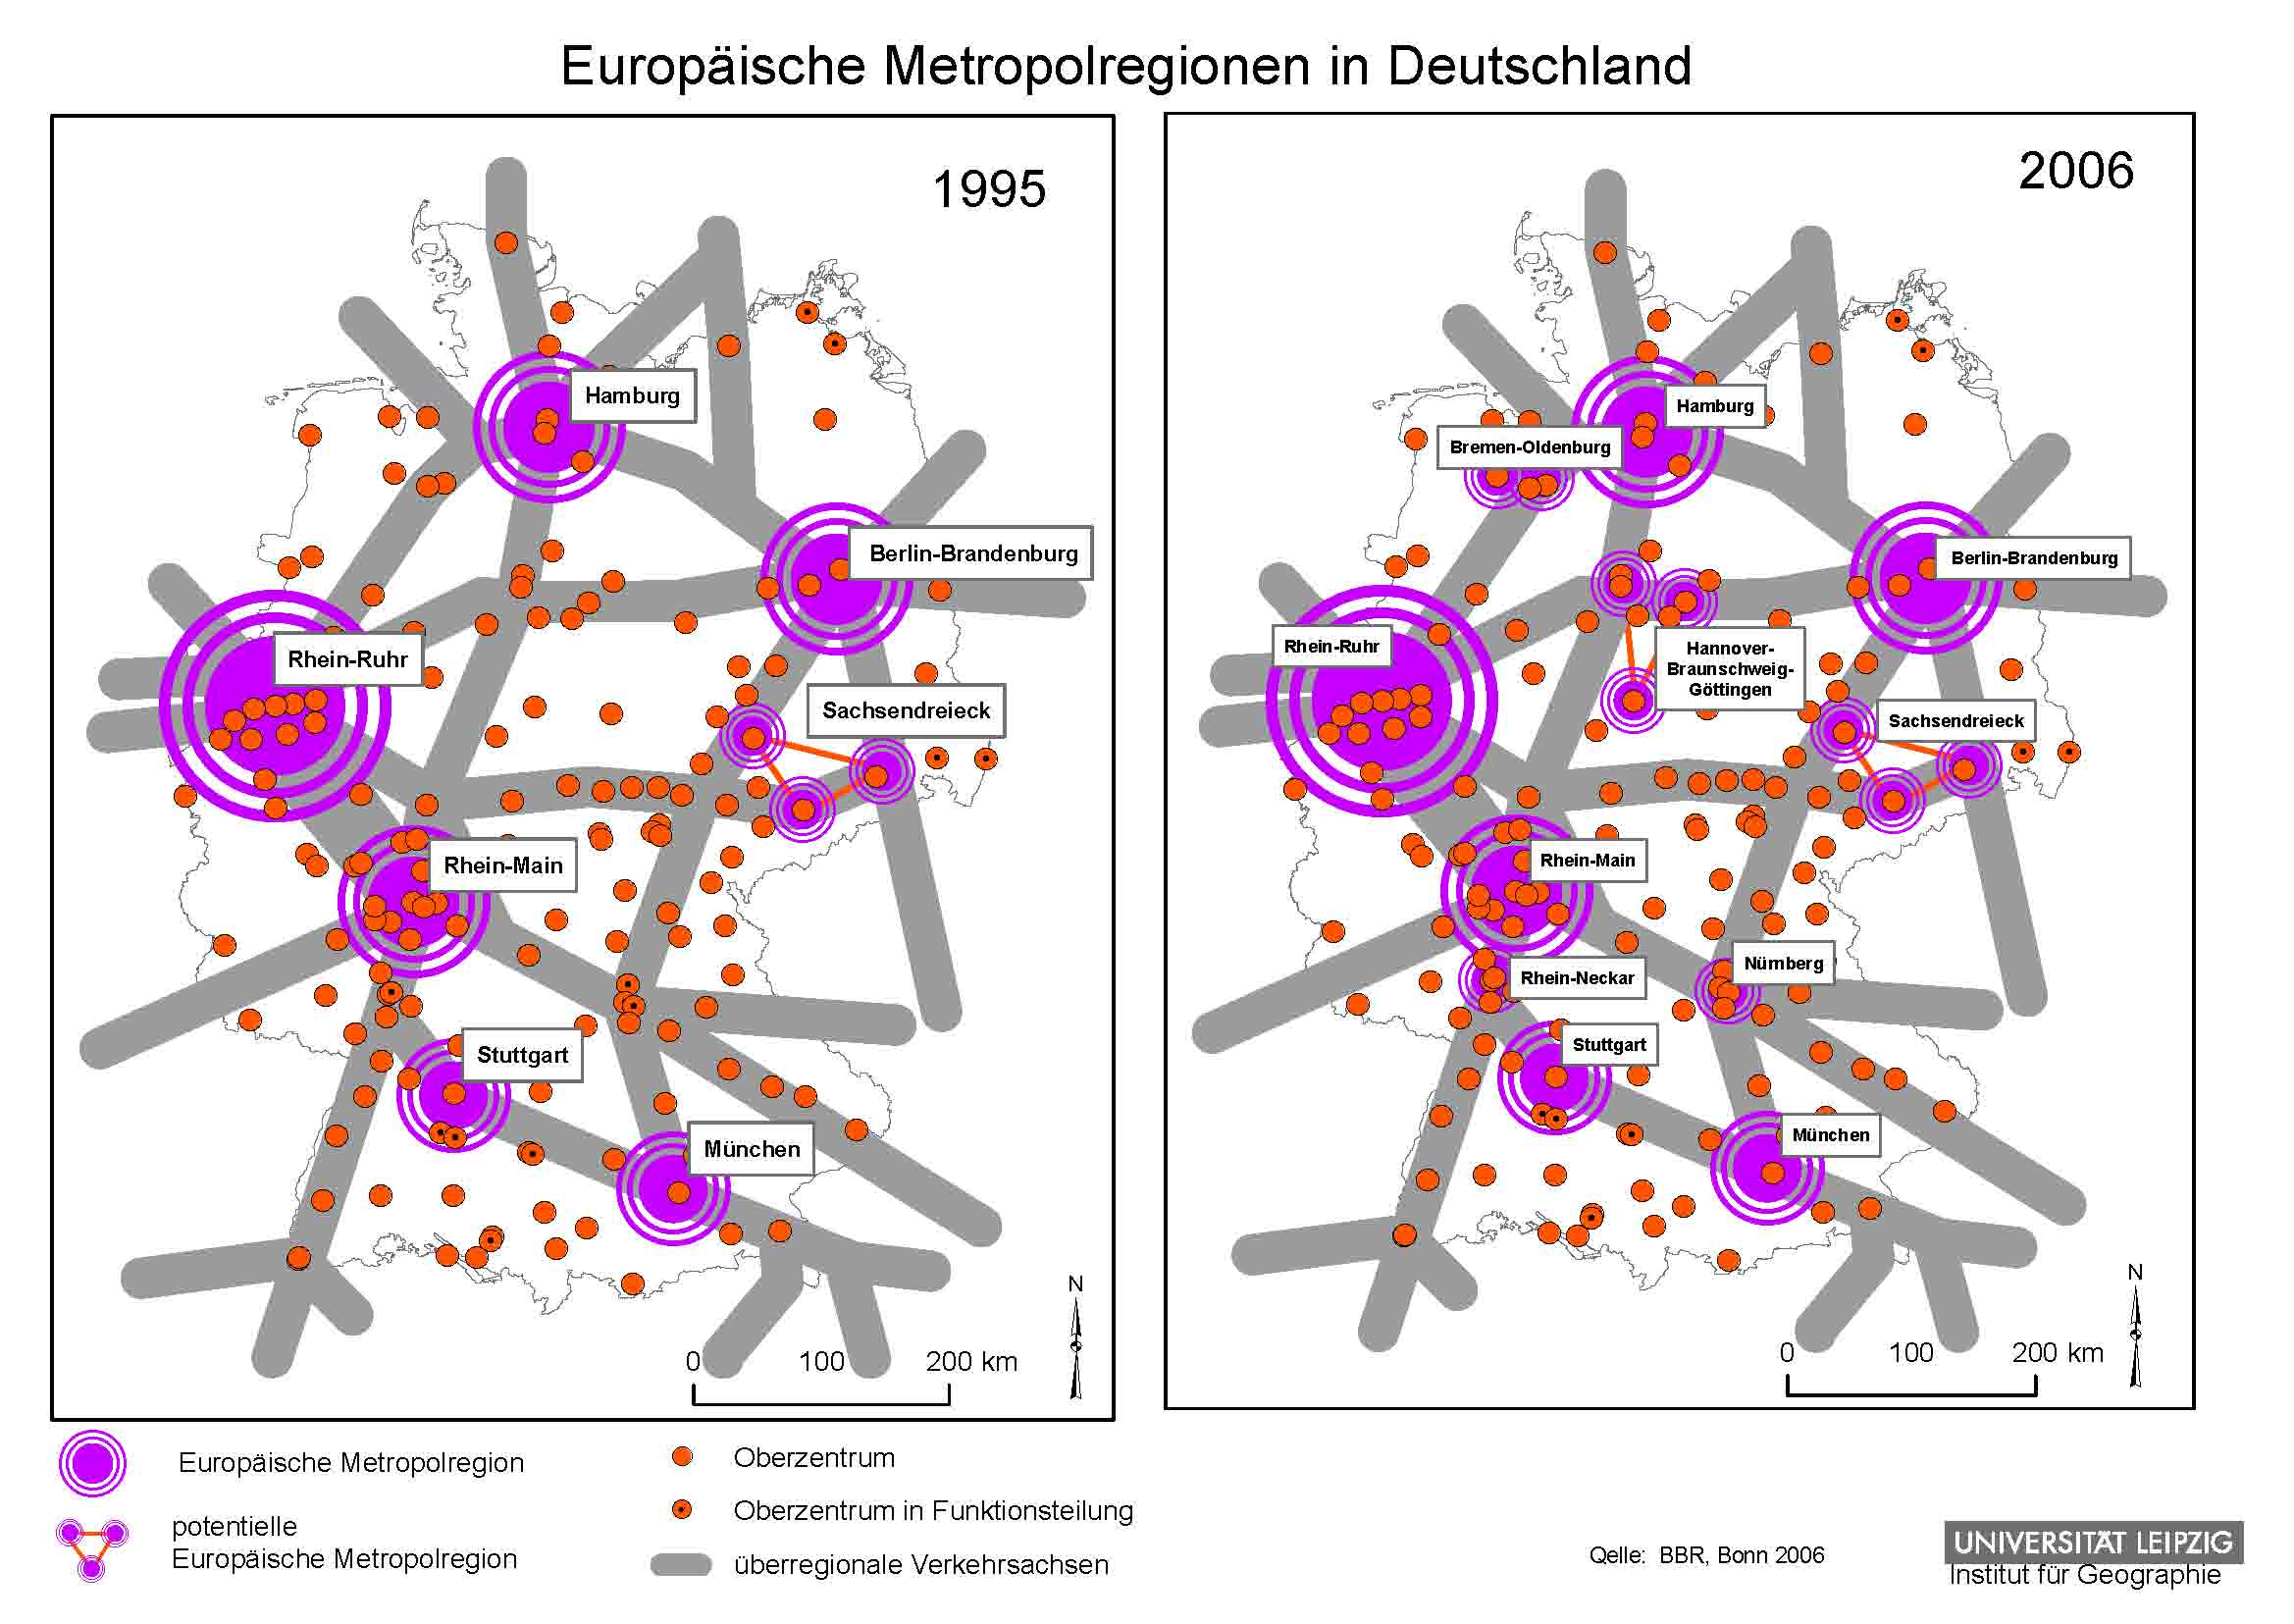 Abb. 1: Europäische Metropolregionen in Deutschland, Karte: Universität Leipzig, Institut für Geographie. 